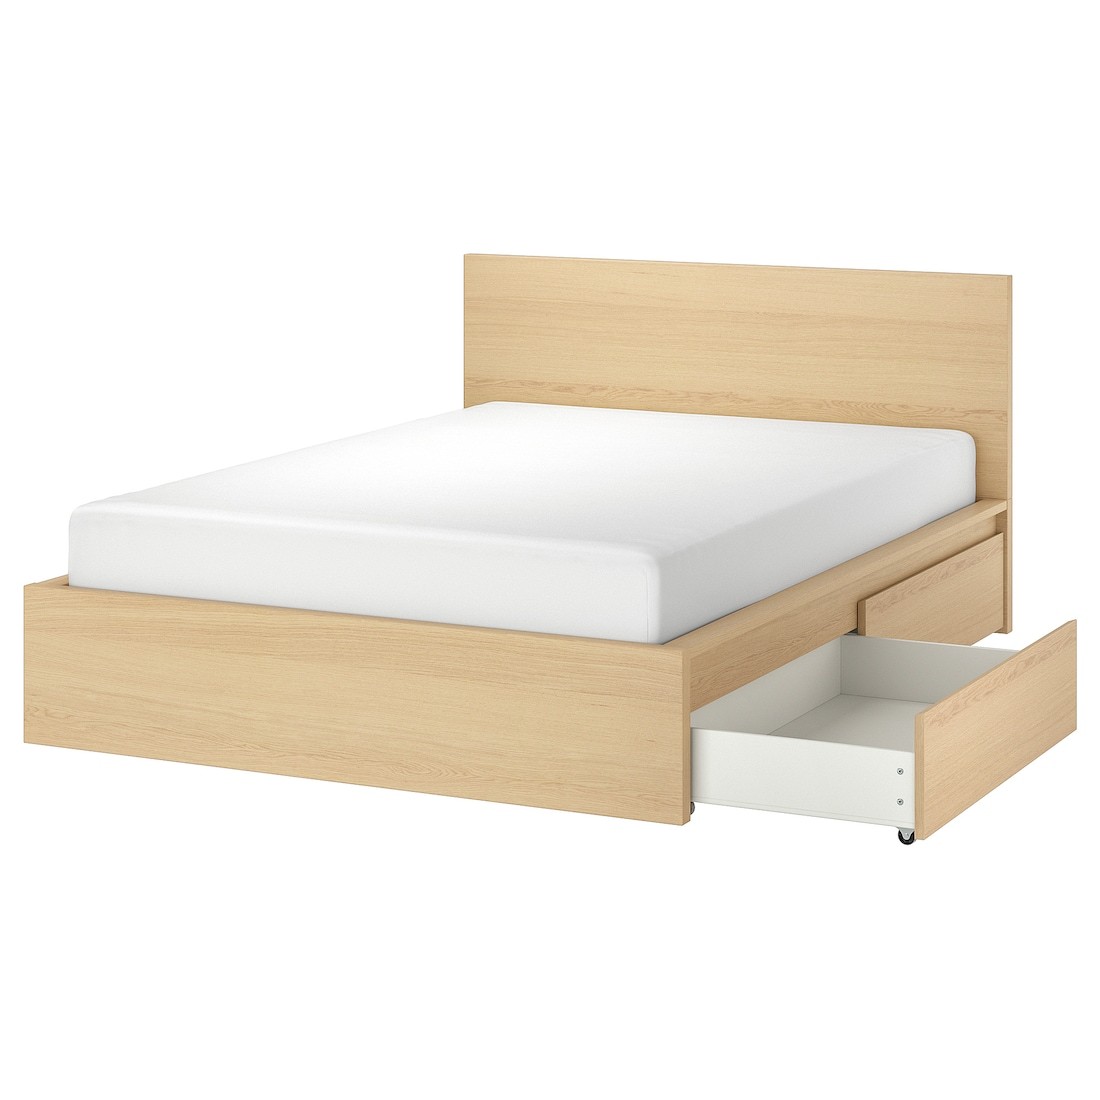 IKEA MALM МАЛЬМ Кровать двуспальная с 2 ящиками, дубовый шпон беленый / Leirsund, 180x200 см 19176612 191.766.12